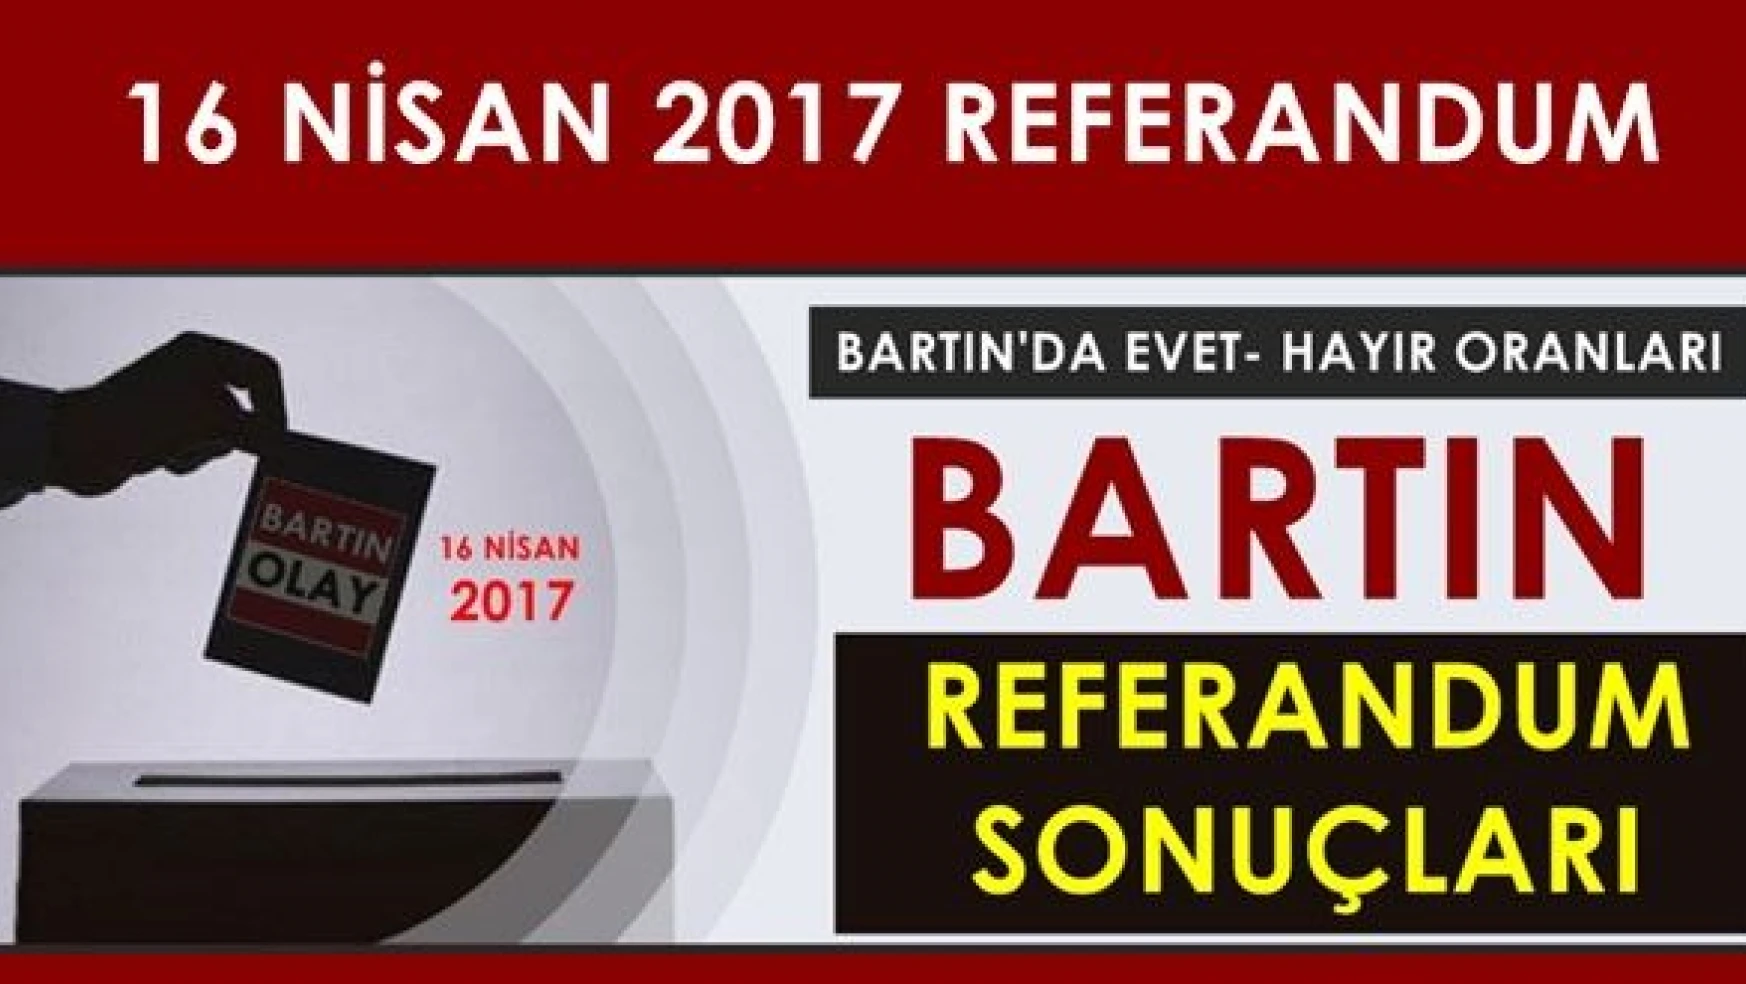 Bartın'da 16 Nisan 2017 Referandum sonuçları 